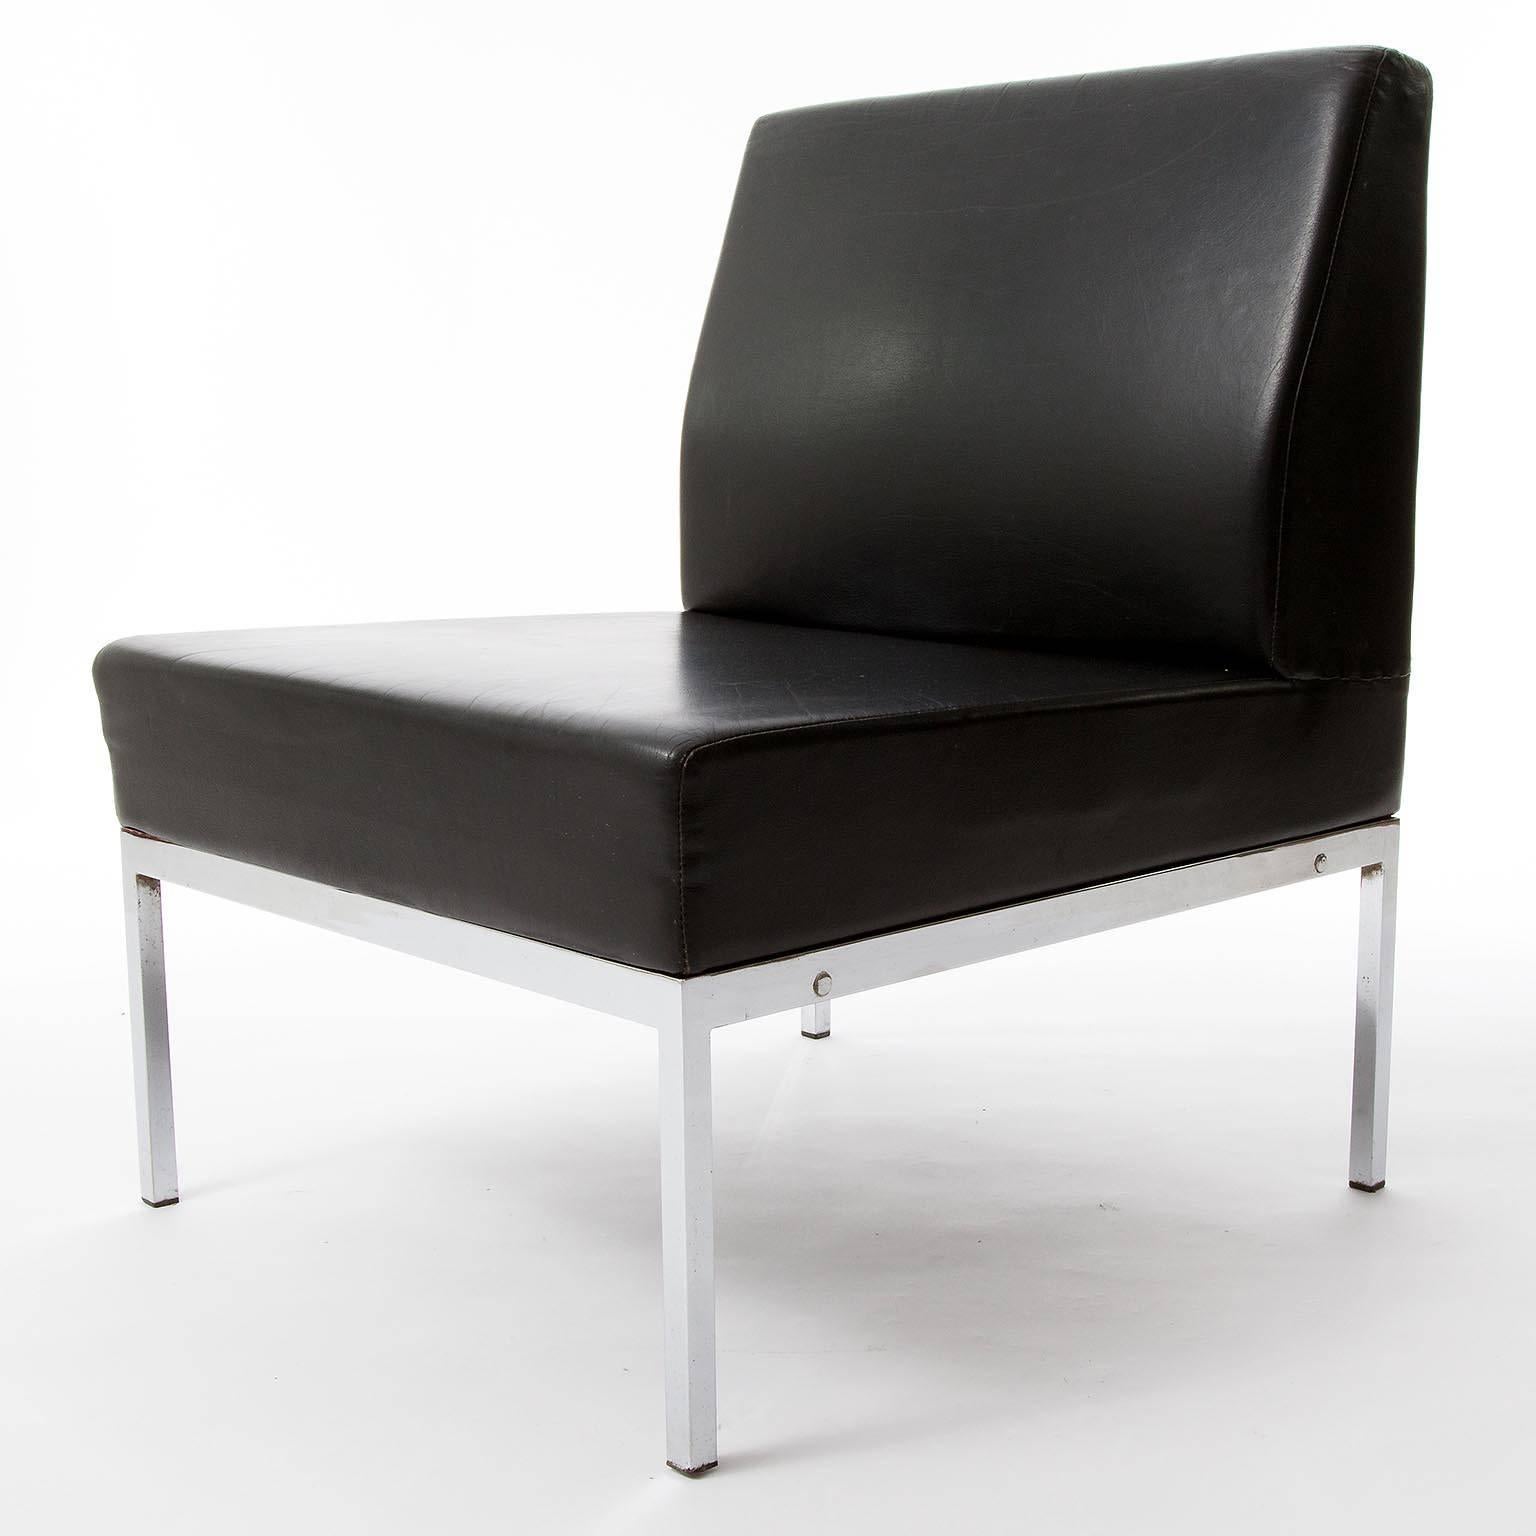 Ensemble de deux chaises longues en cuir et chrome ou nickel attribuées à Thonet, Autriche, vers 1970 (fin des années 1960 ou début des années 1970).
Ils sont fabriqués en cuir noir épais de haute qualité sur une armature en métal chromé (ou